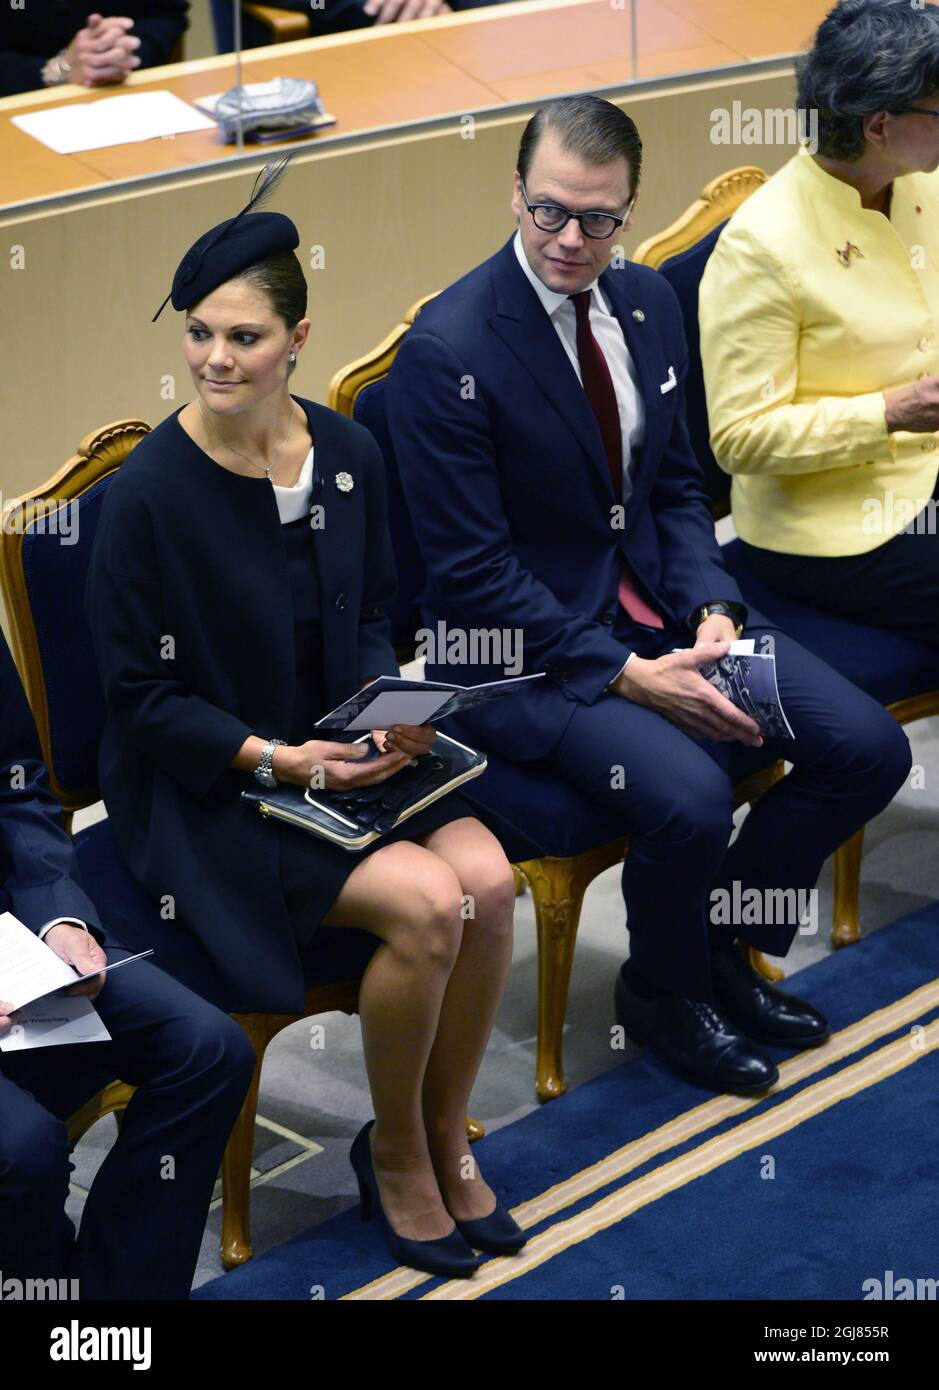 ESTOCOLMO 2013-09-17 La Princesa Victoria y el Príncipe Daniel asisten a la inauguración del Parlamento en Estocolmo, Suecia, 17 de septiembre de 2013 Foto: Henrik Montgomery / SCANPIX / Kod 10060 Foto de stock